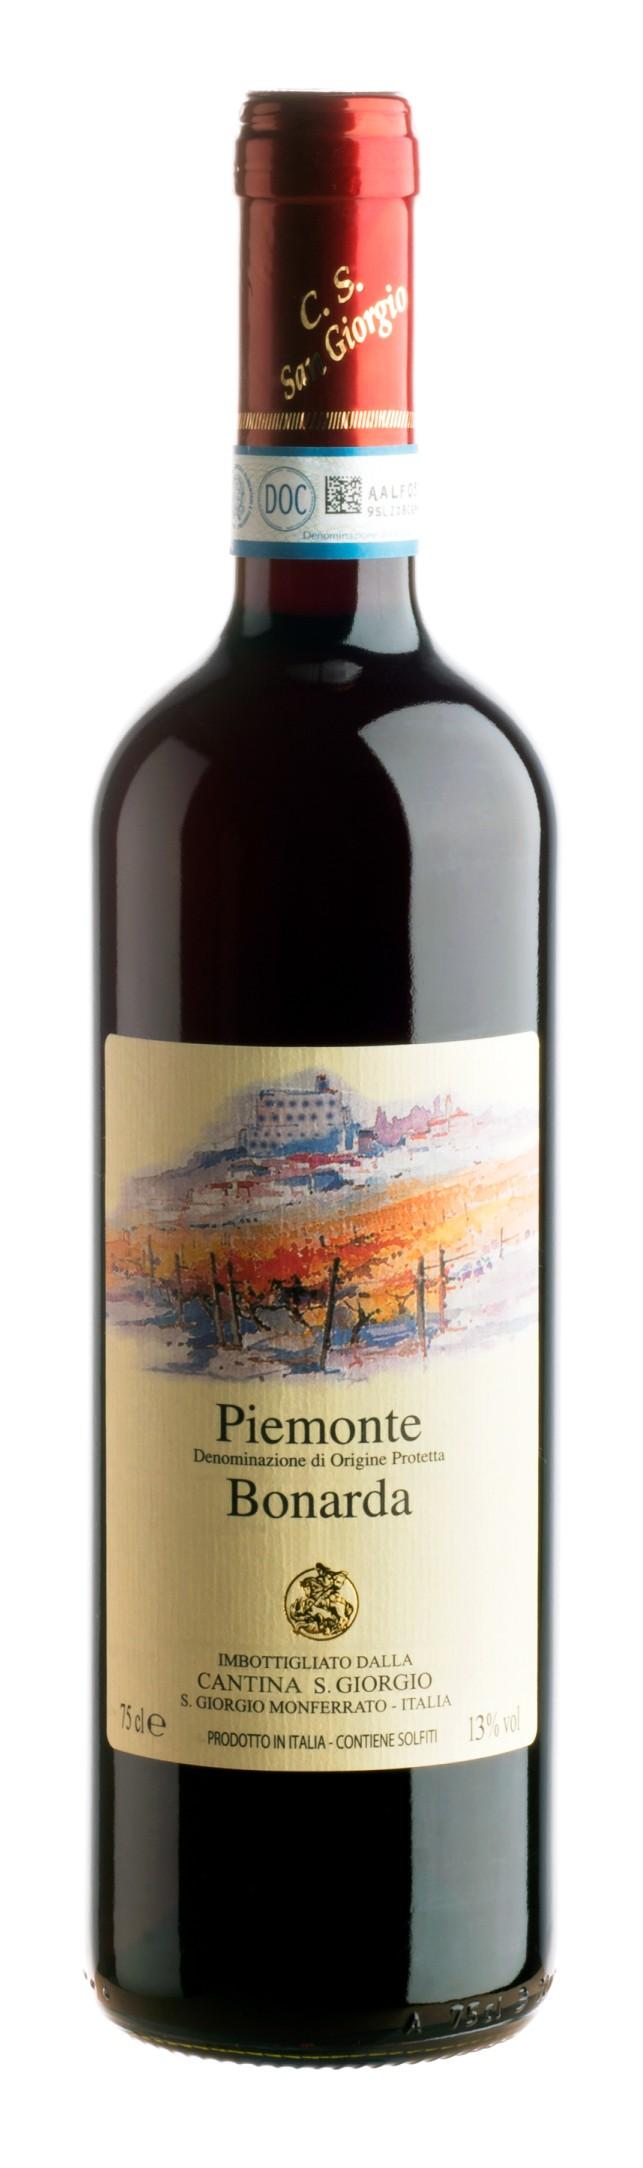 PIEMONTE DOC BONARDA Il vitigno Bonarda è tradizionalmente piemontese da non confondere con il parente stretto dello Oltrepò Pavese che è ricavato con uva Croatina ( più amabile e frizzante).